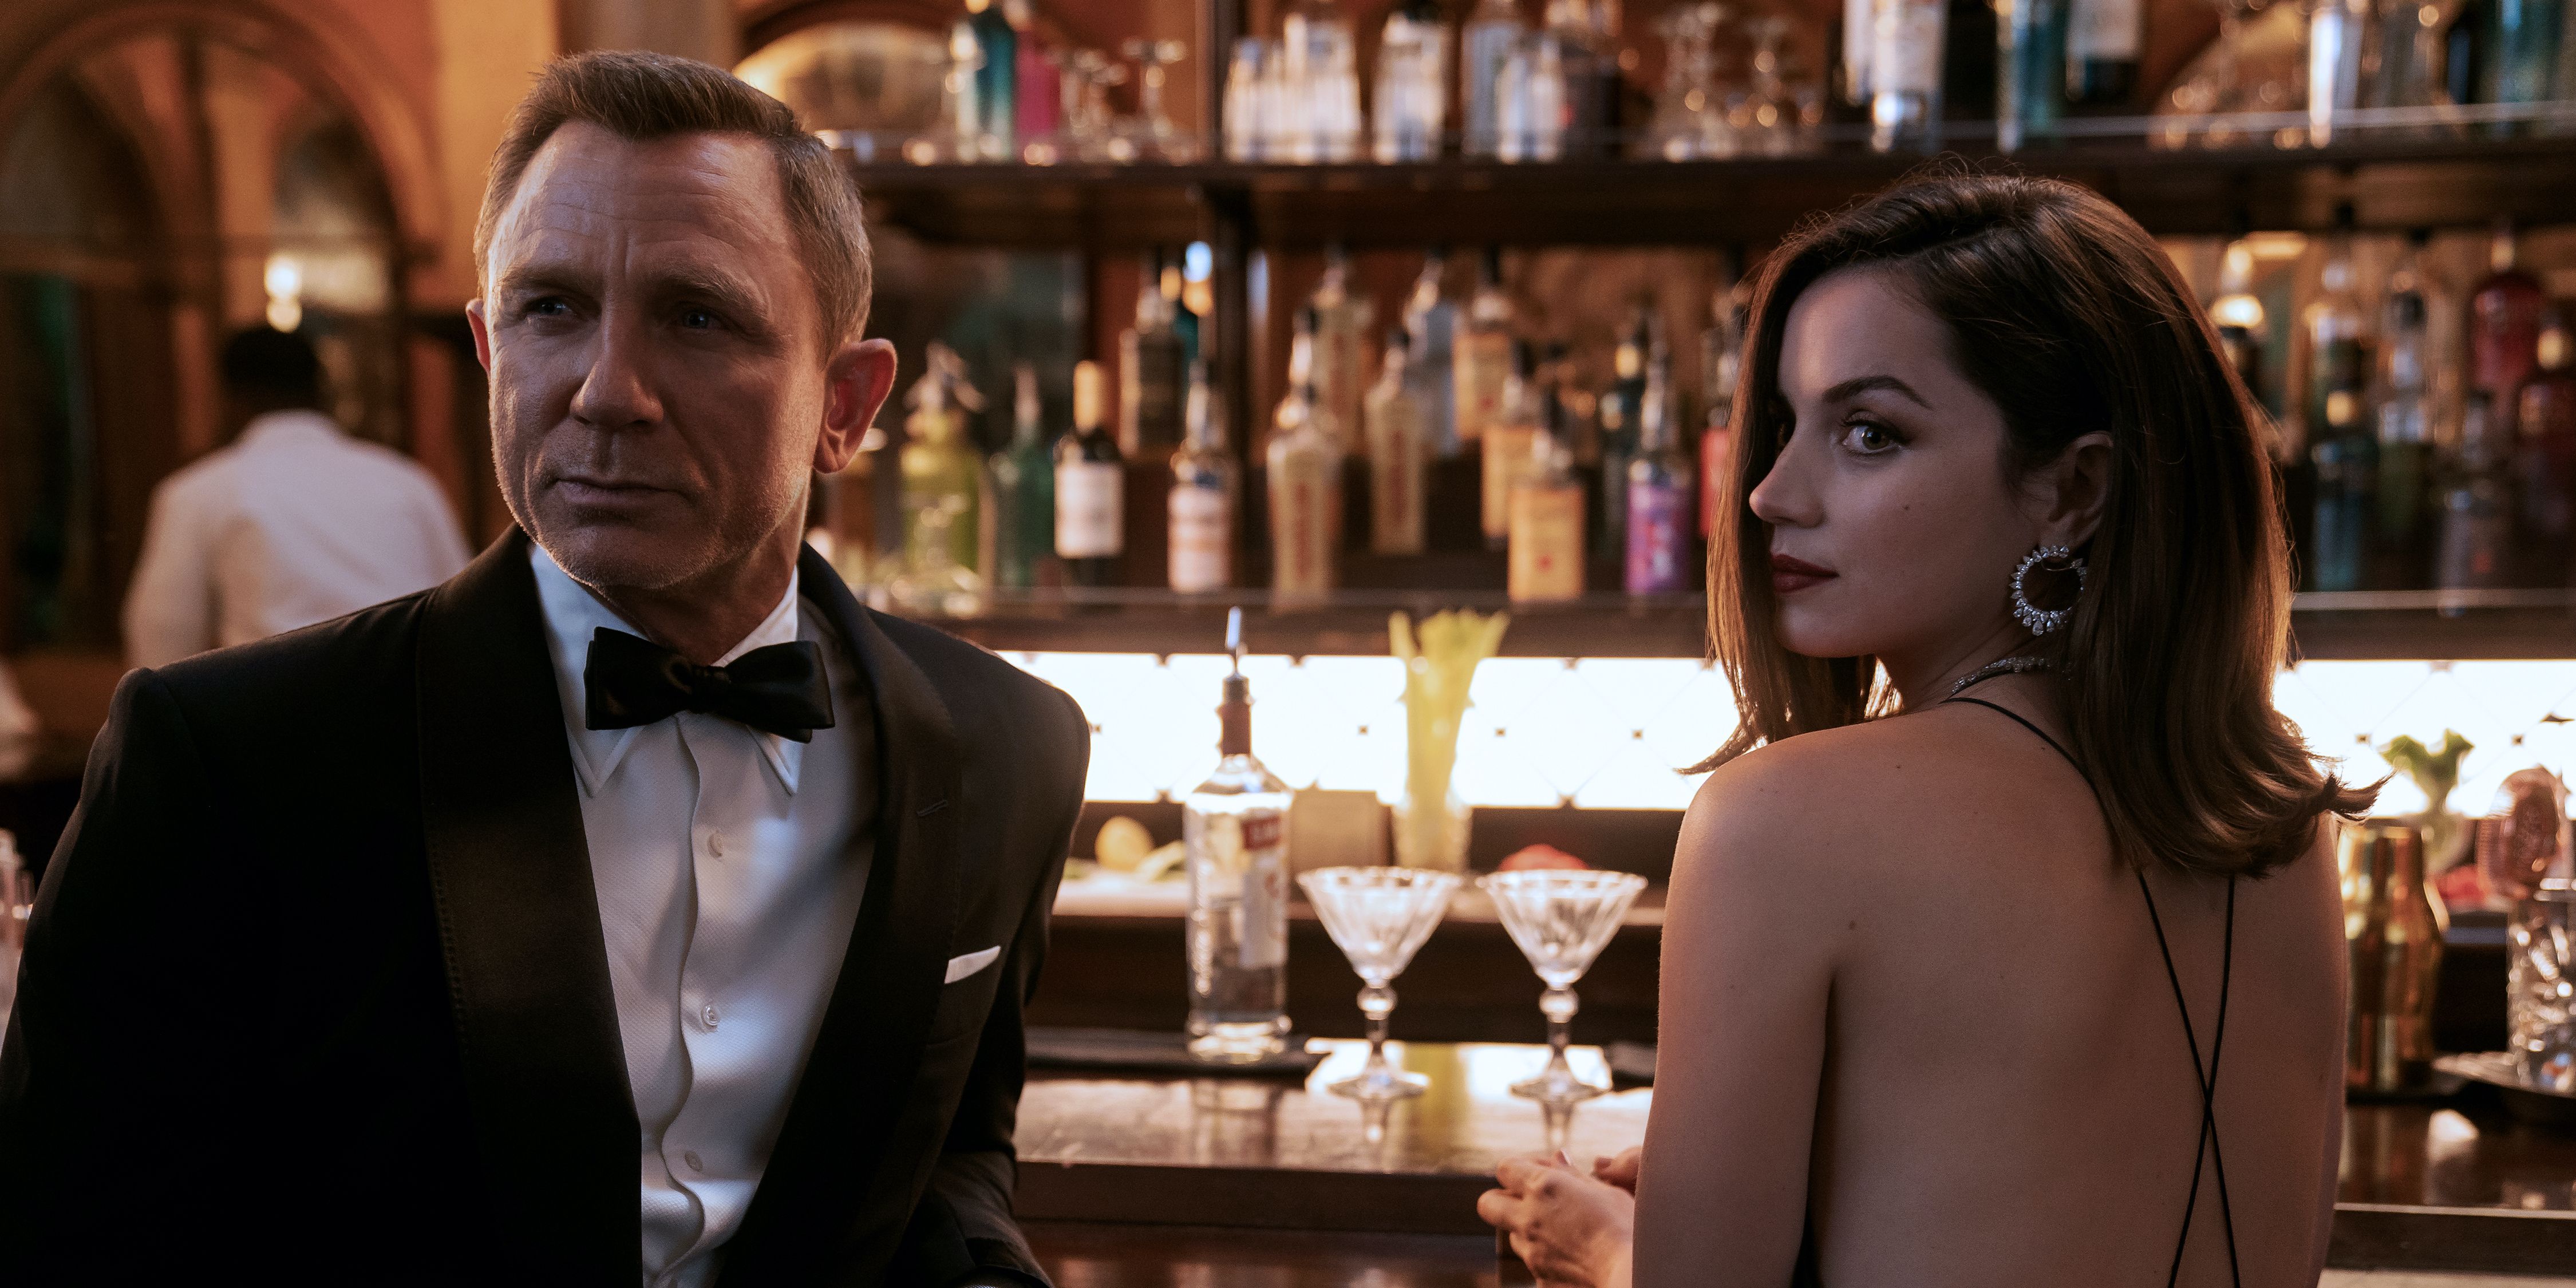  Paloma and James Bond share martinis at bar